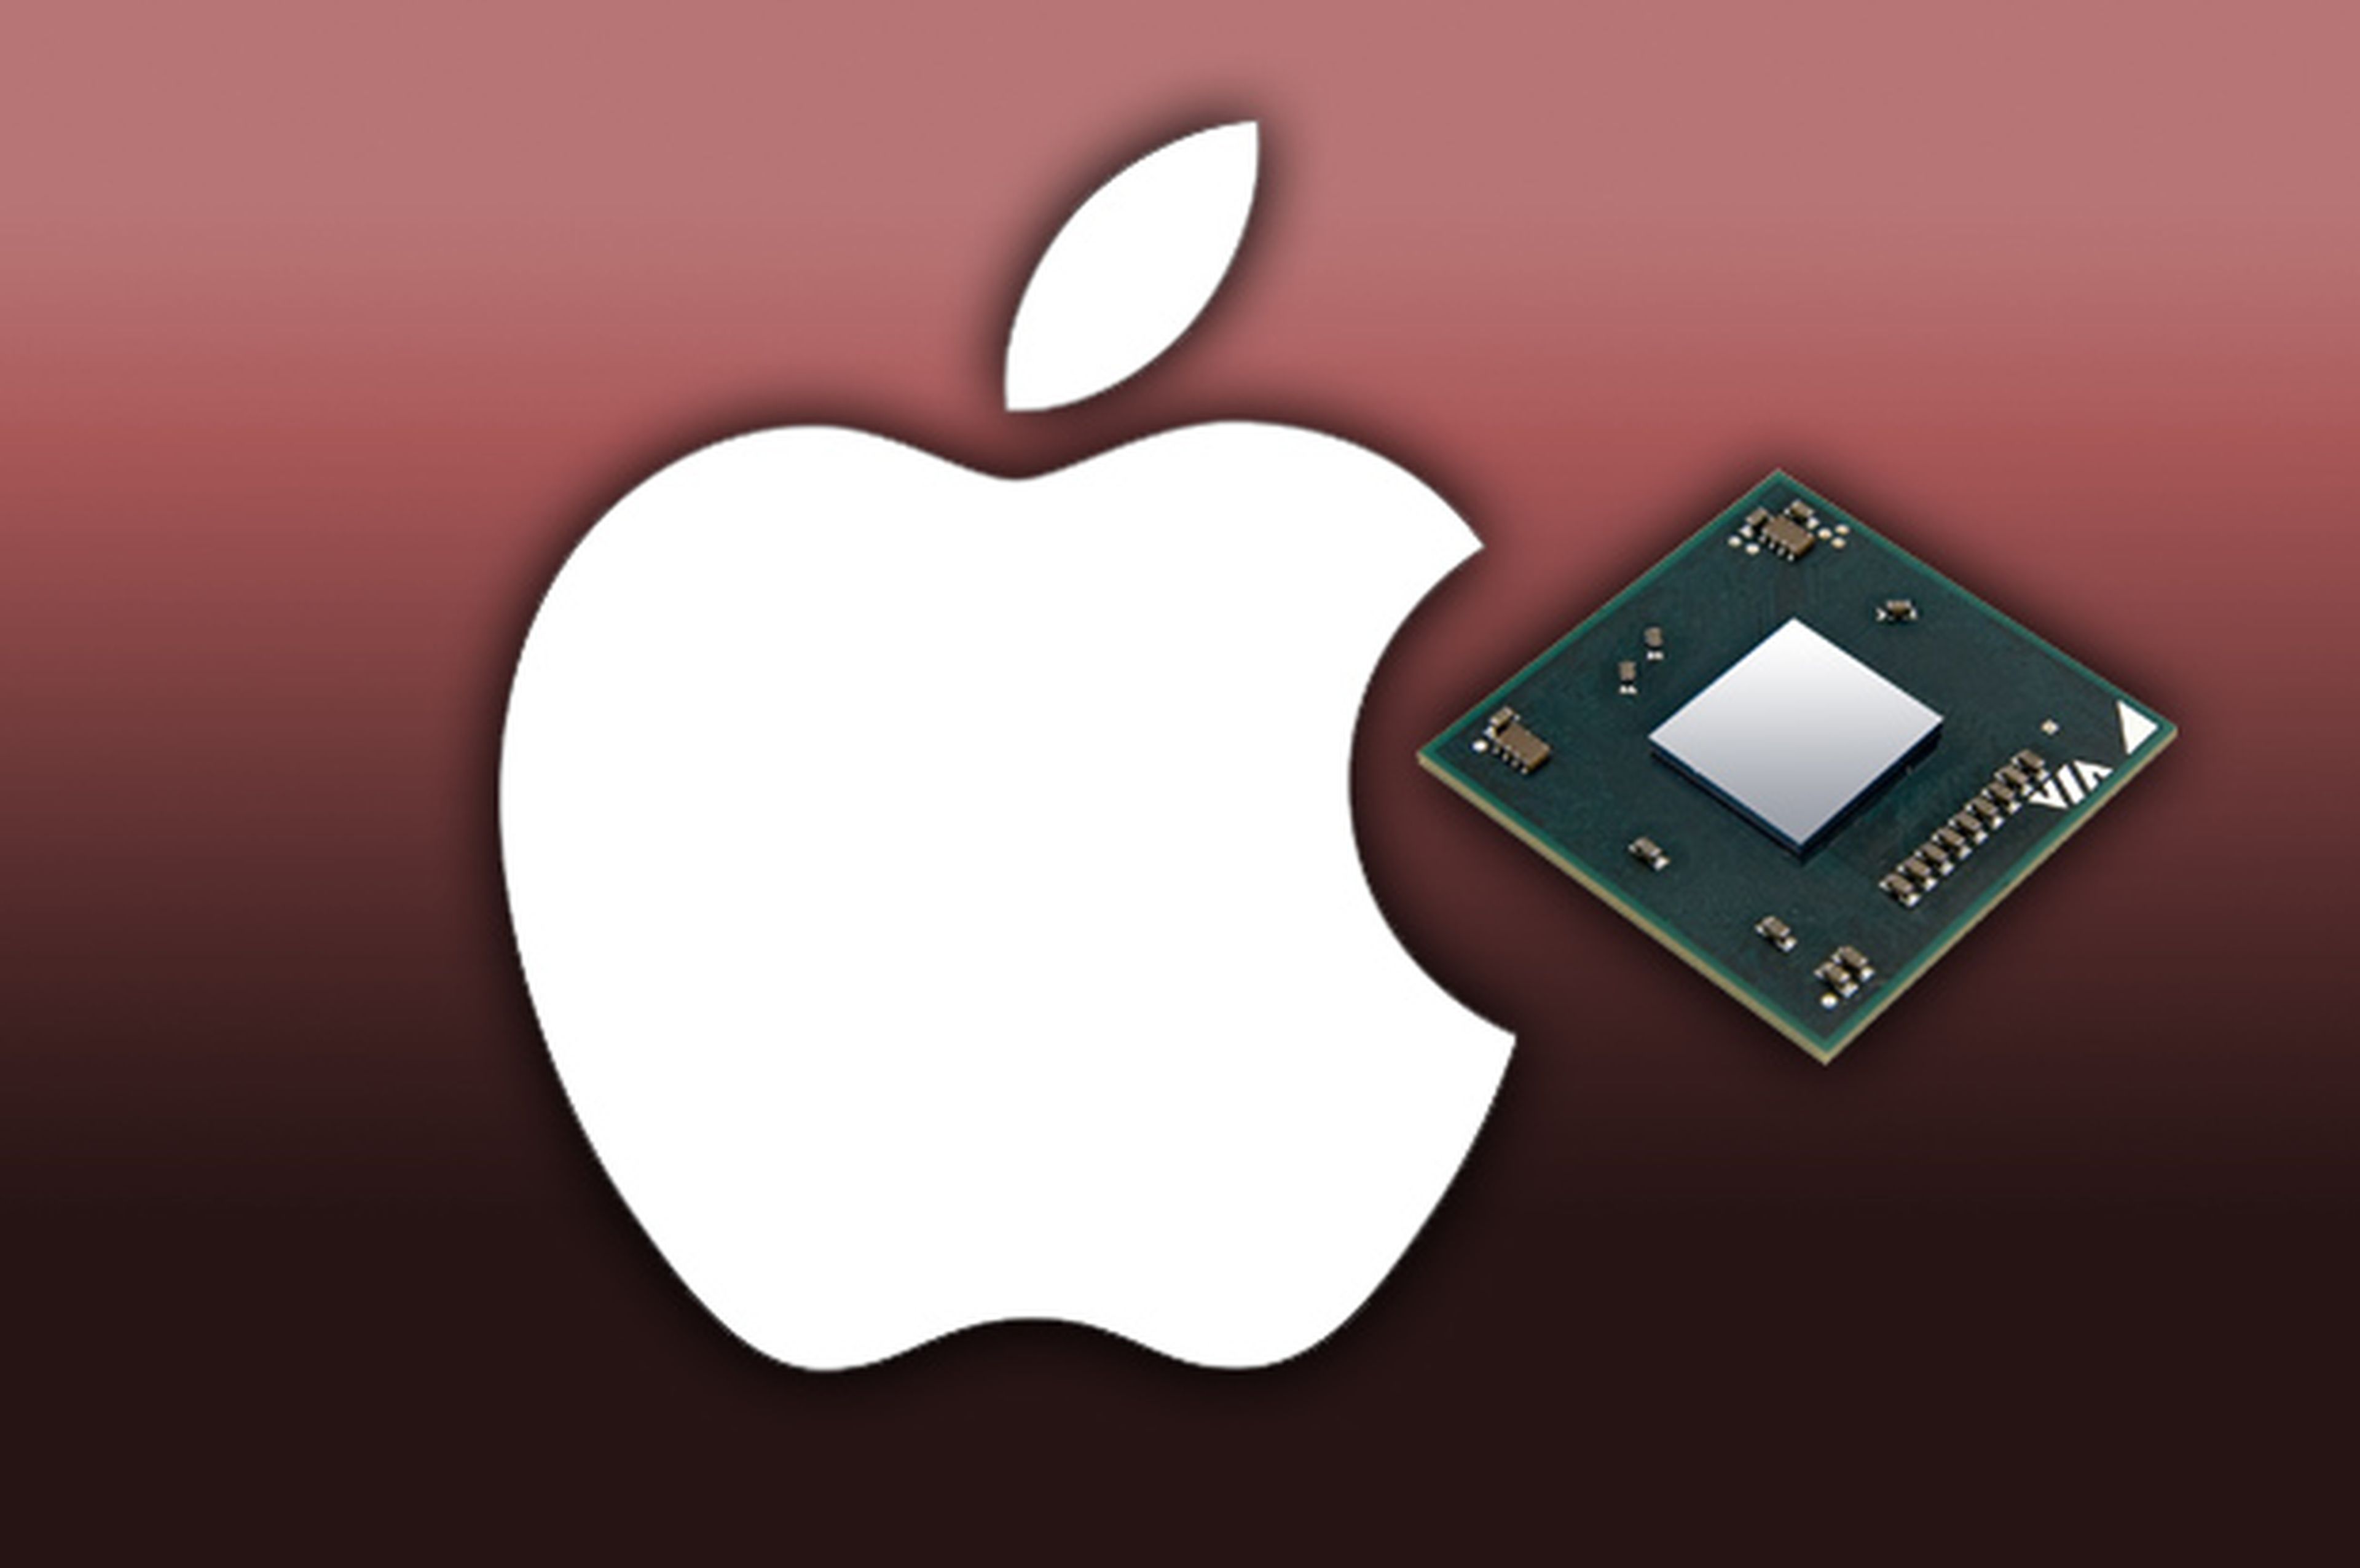 Apple compra fabricante de chips. ¿partes para el iWatch?